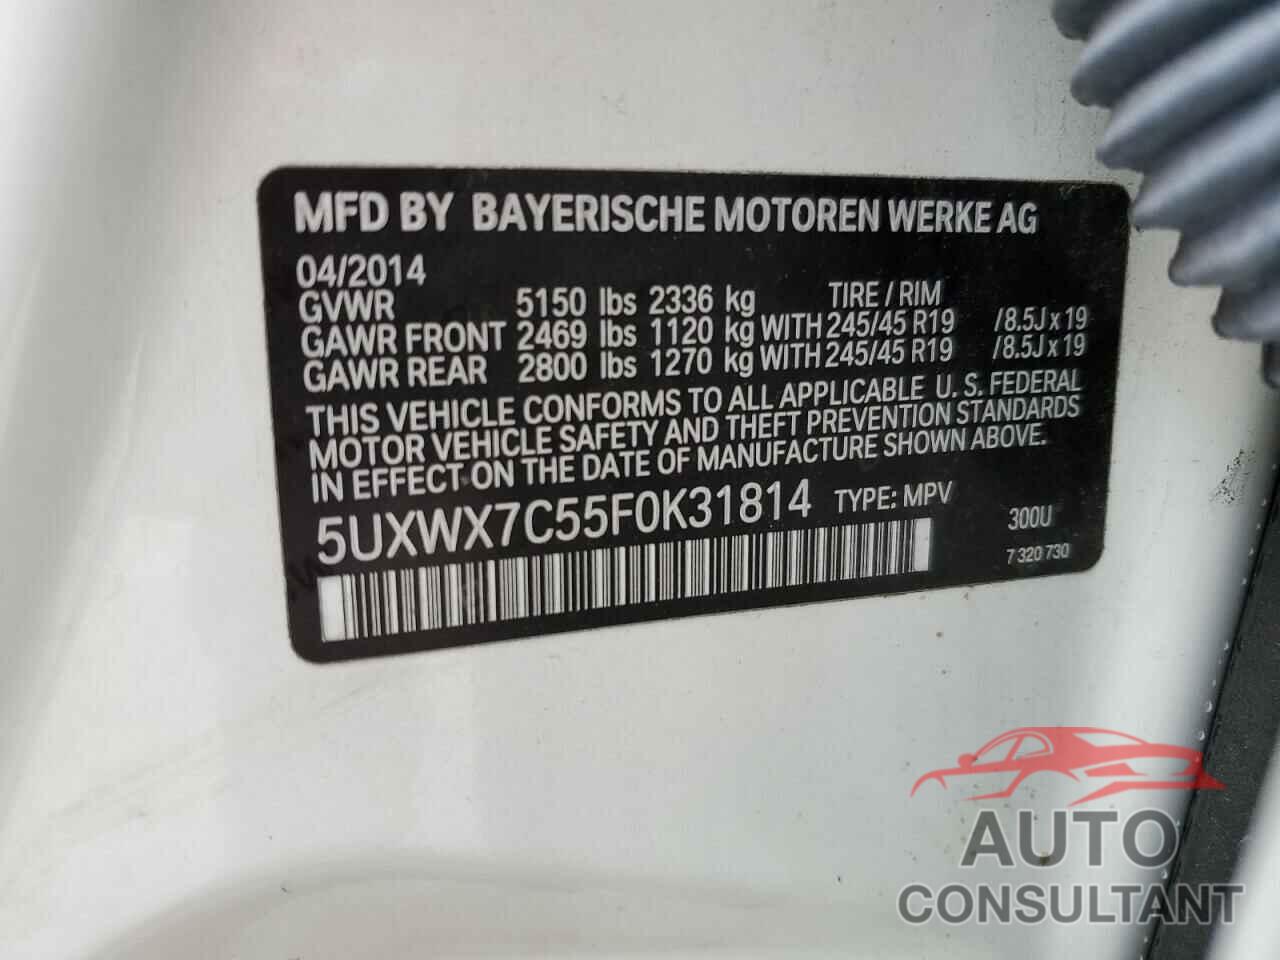 BMW X3 2015 - 5UXWX7C55F0K31814